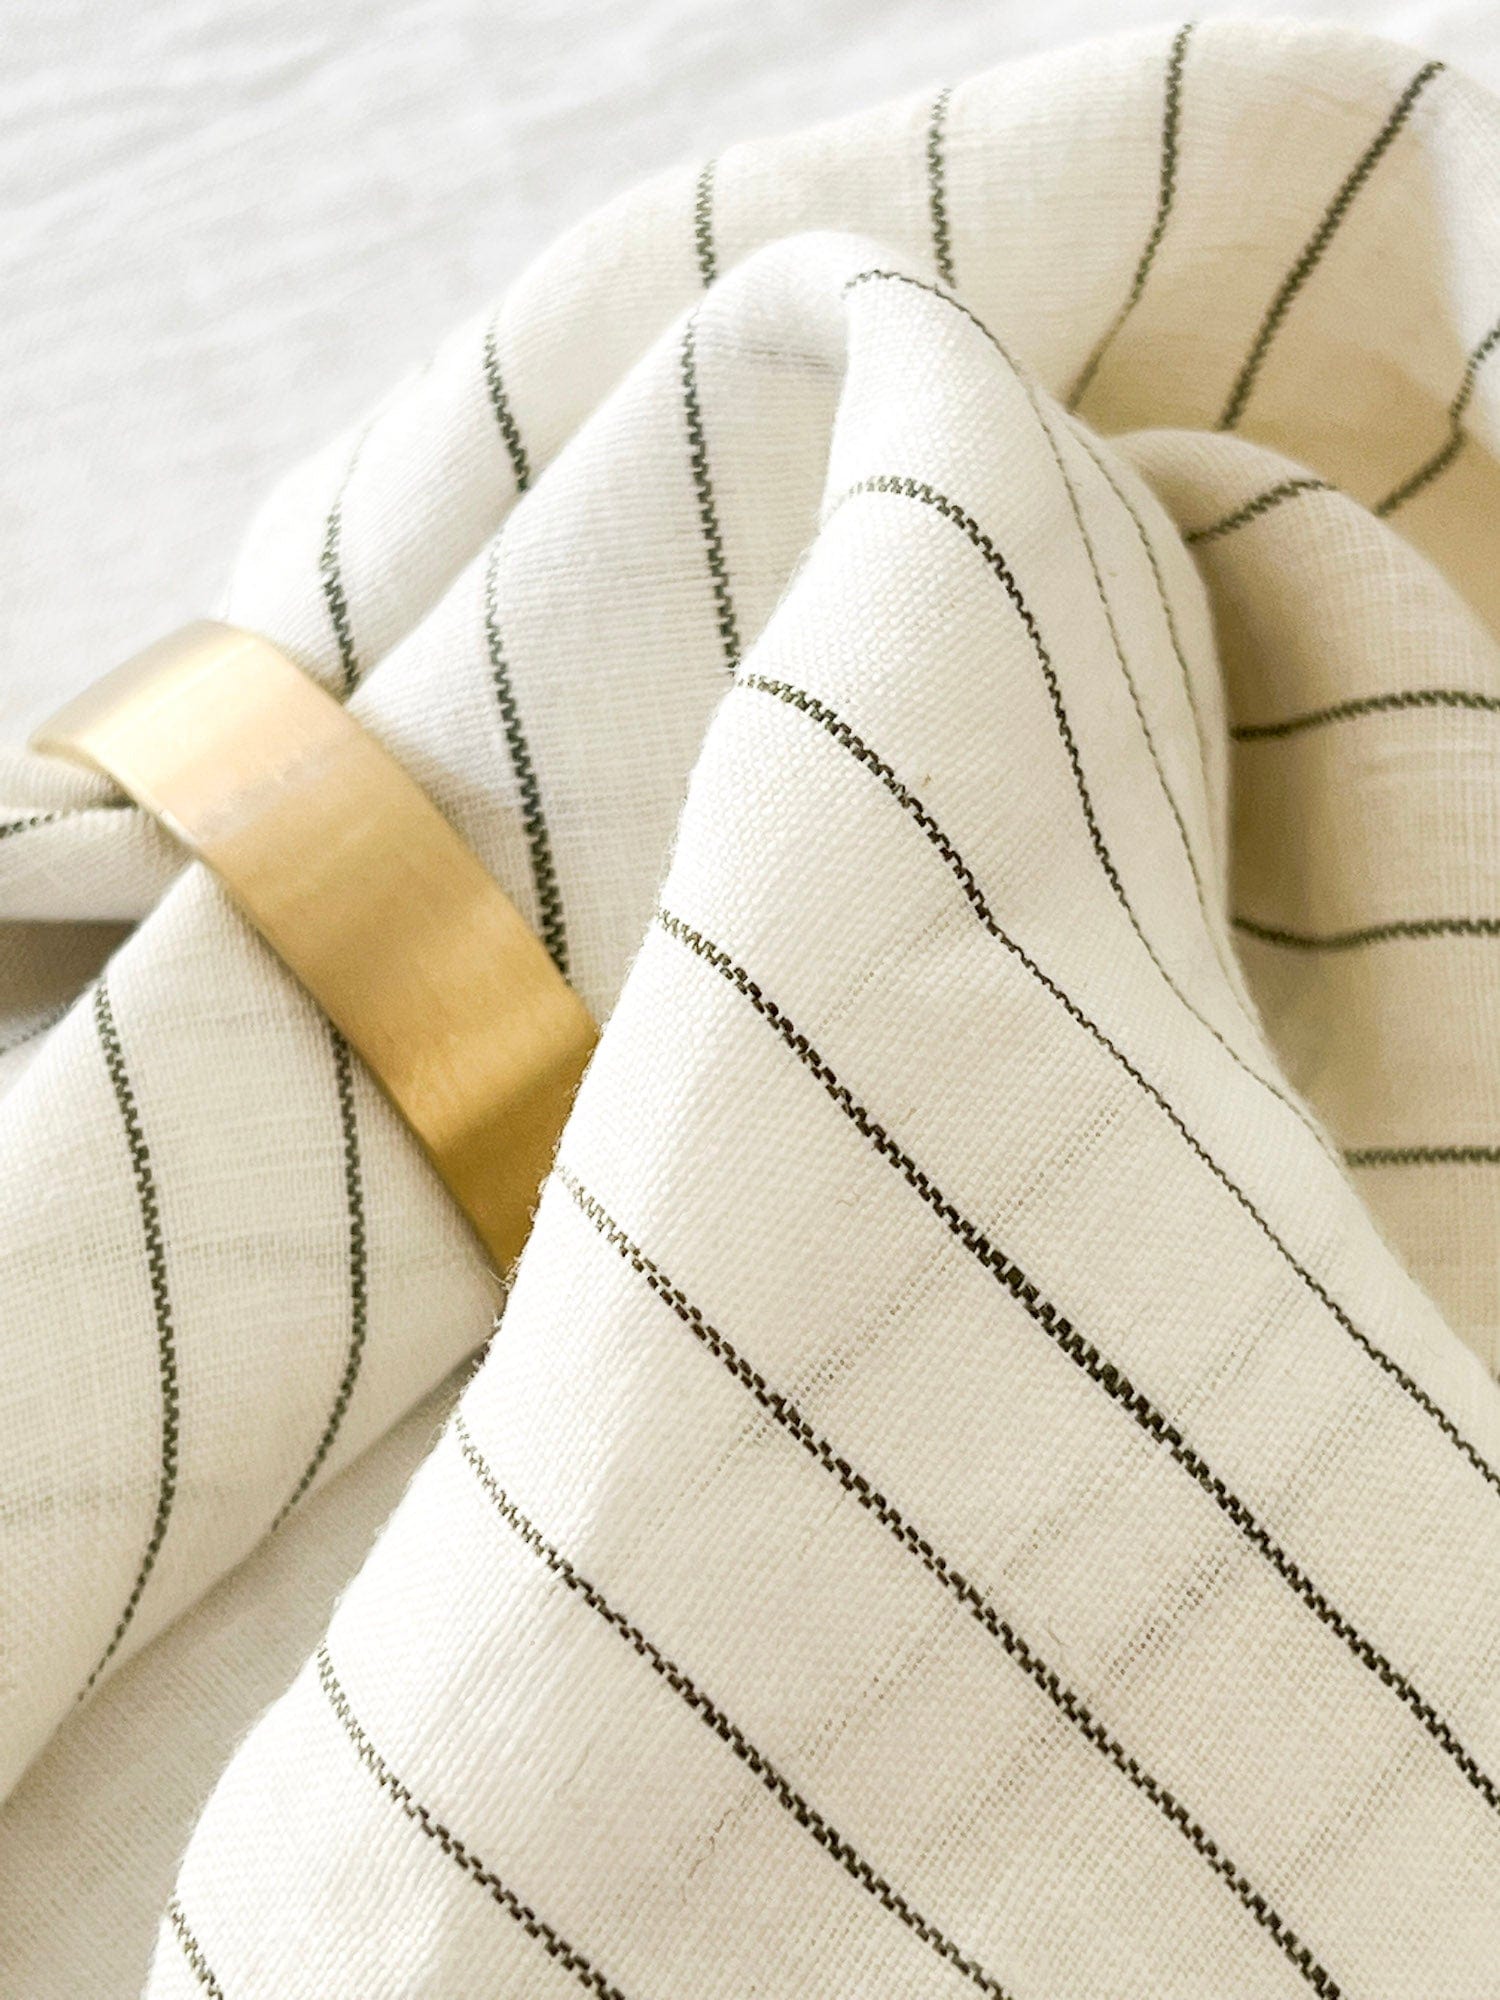 Flou. Design Flou. Design 100% Linen Napkins - Striped Olive (Set of four) (7683118301433)